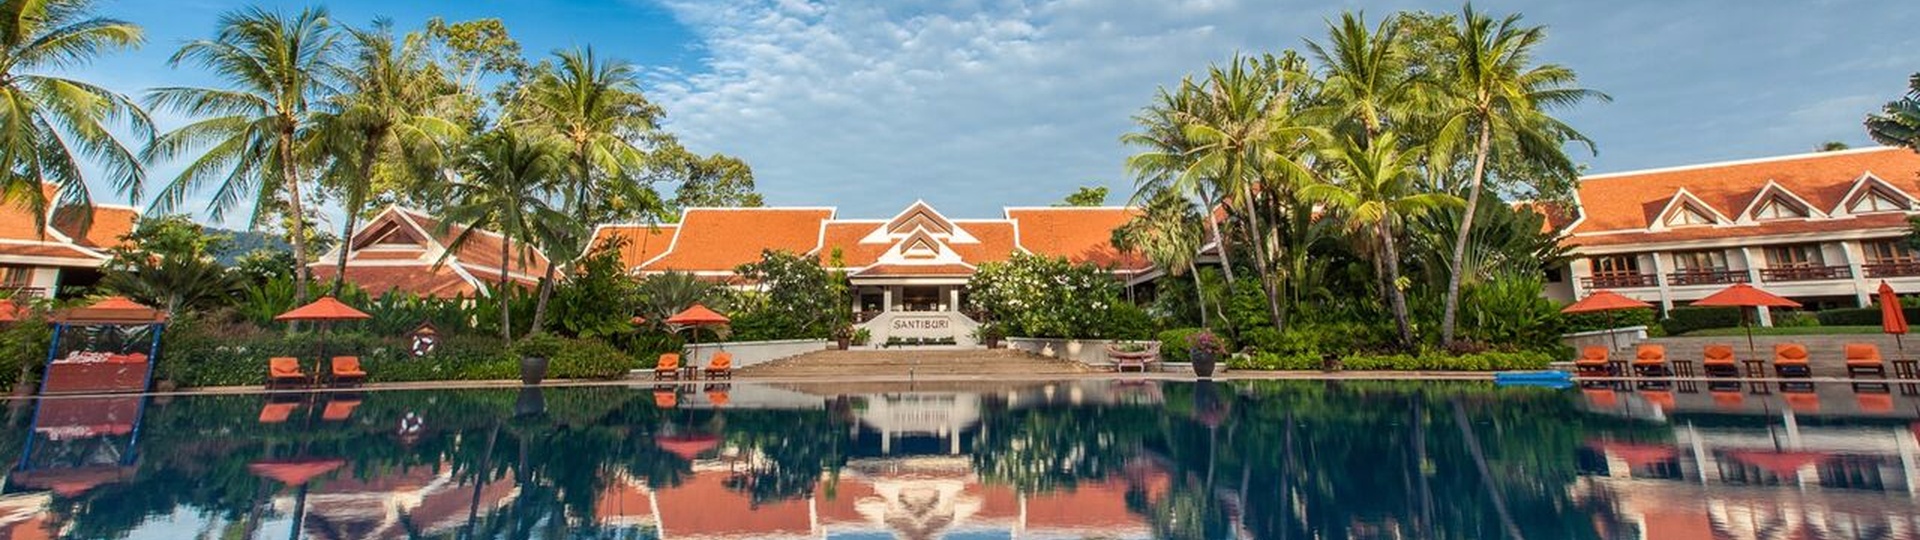 Santiburi Beach Resort & Spa  - Background